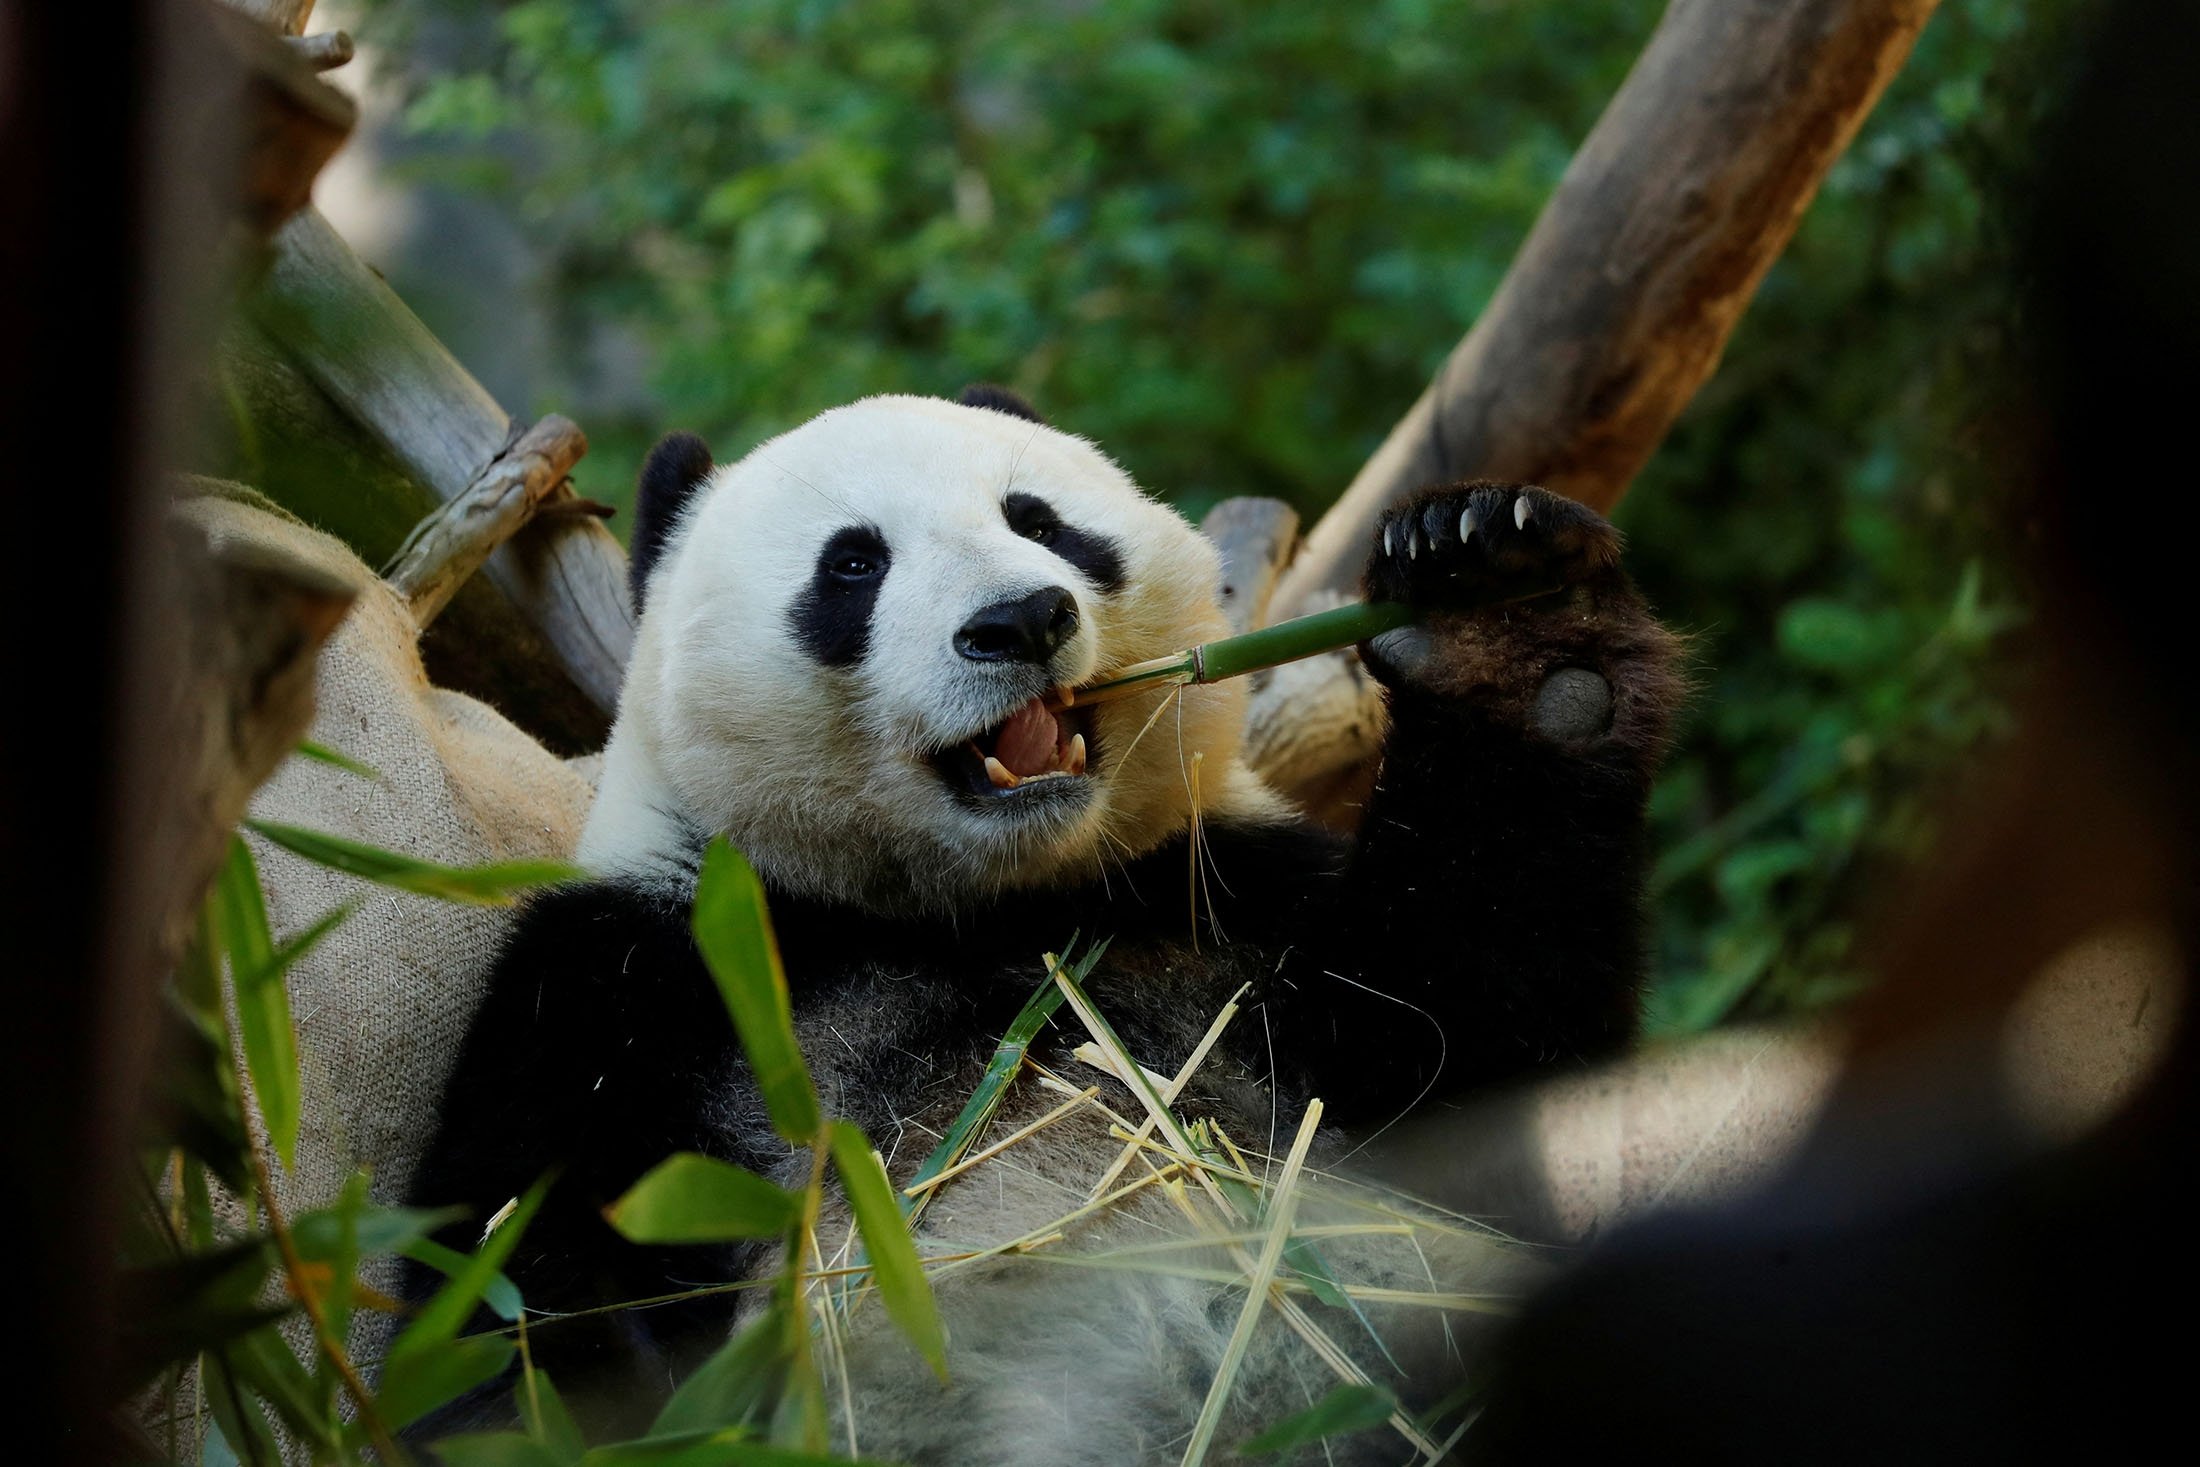 Panda jantan raksasa Xiao Liwu makan bambu sebelum dipulangkan ke China bersama ibunya Bai Yun, mengakhiri program penelitian panda selama 23 tahun di San Diego, California, AS, 18 April 2019. (Foto: Reuters) )